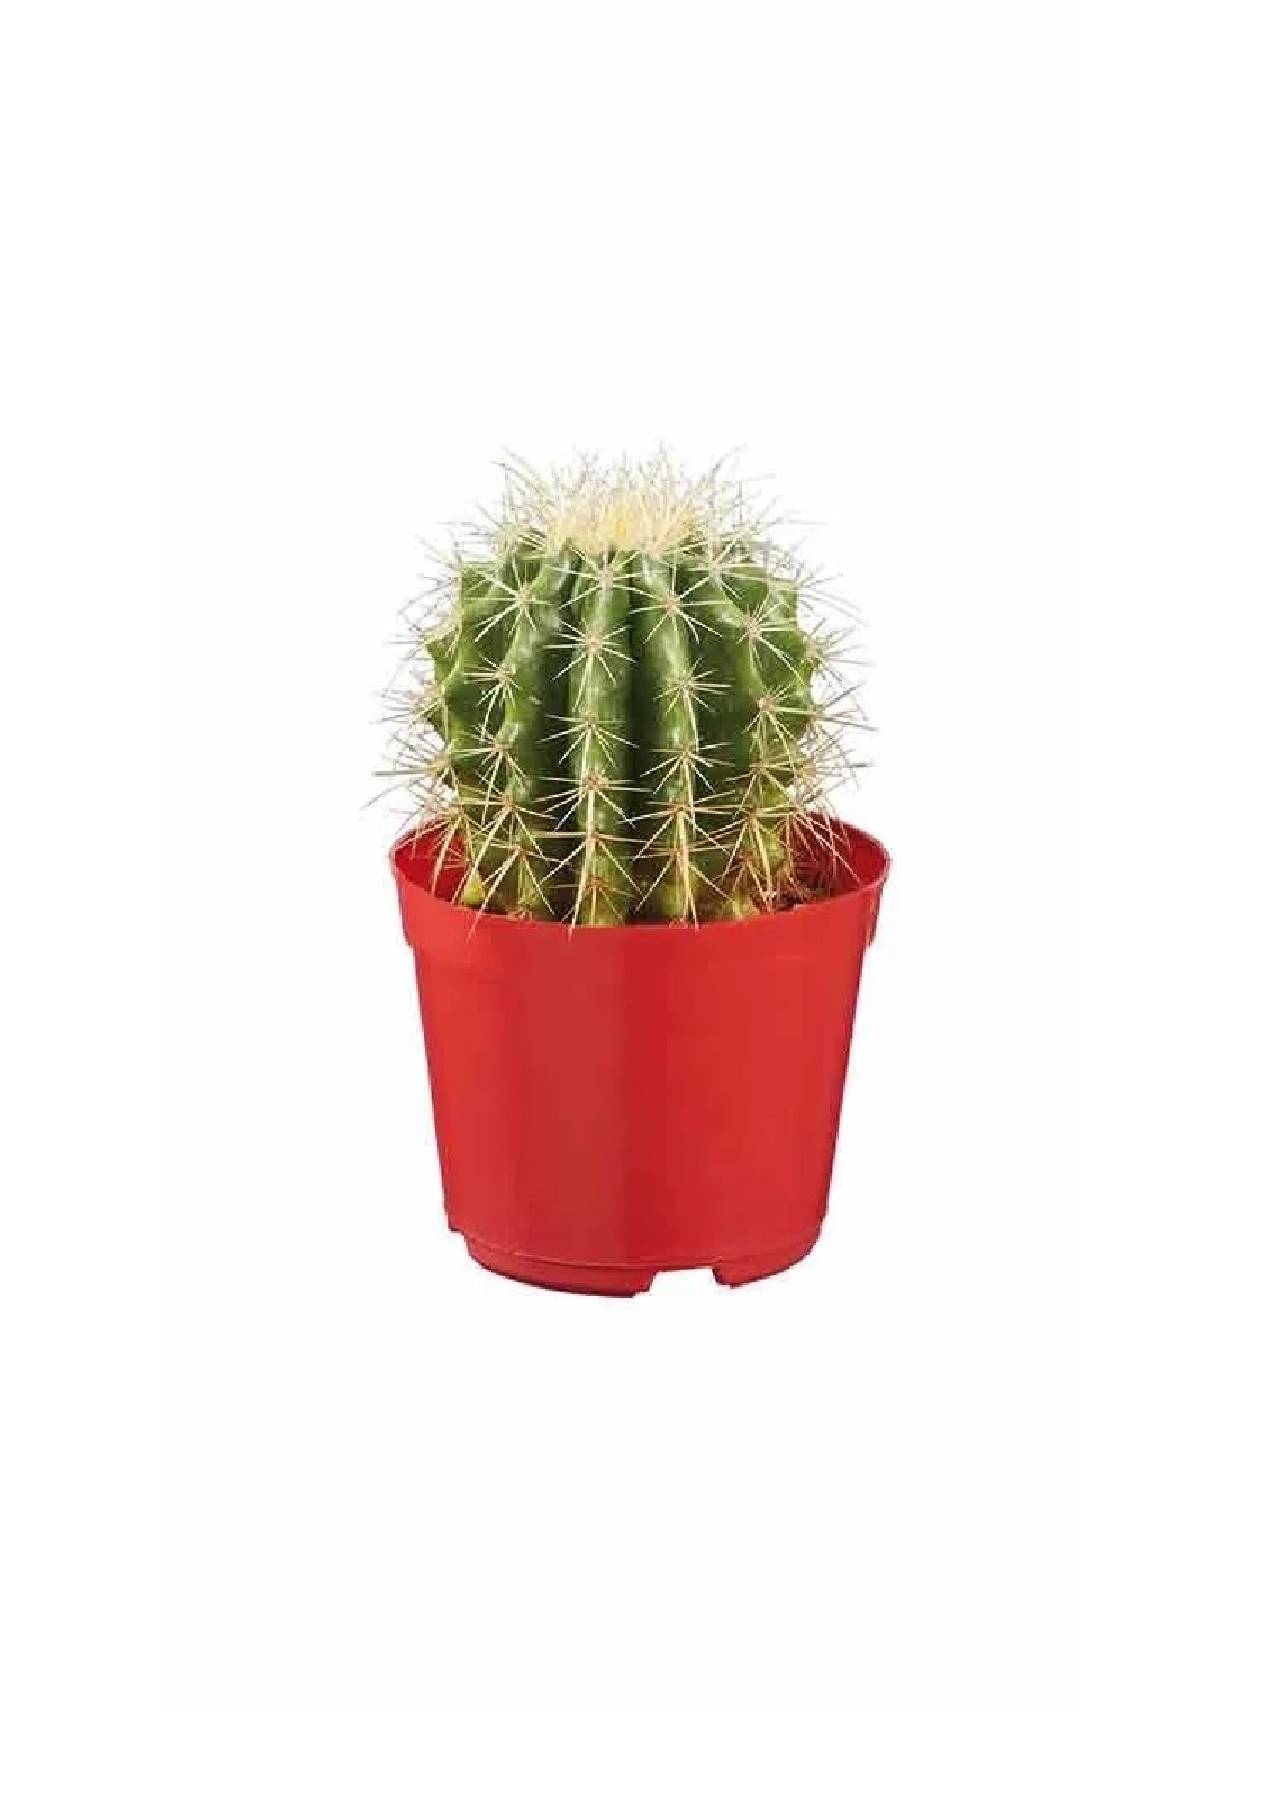 plantas lidl esta semana cactus